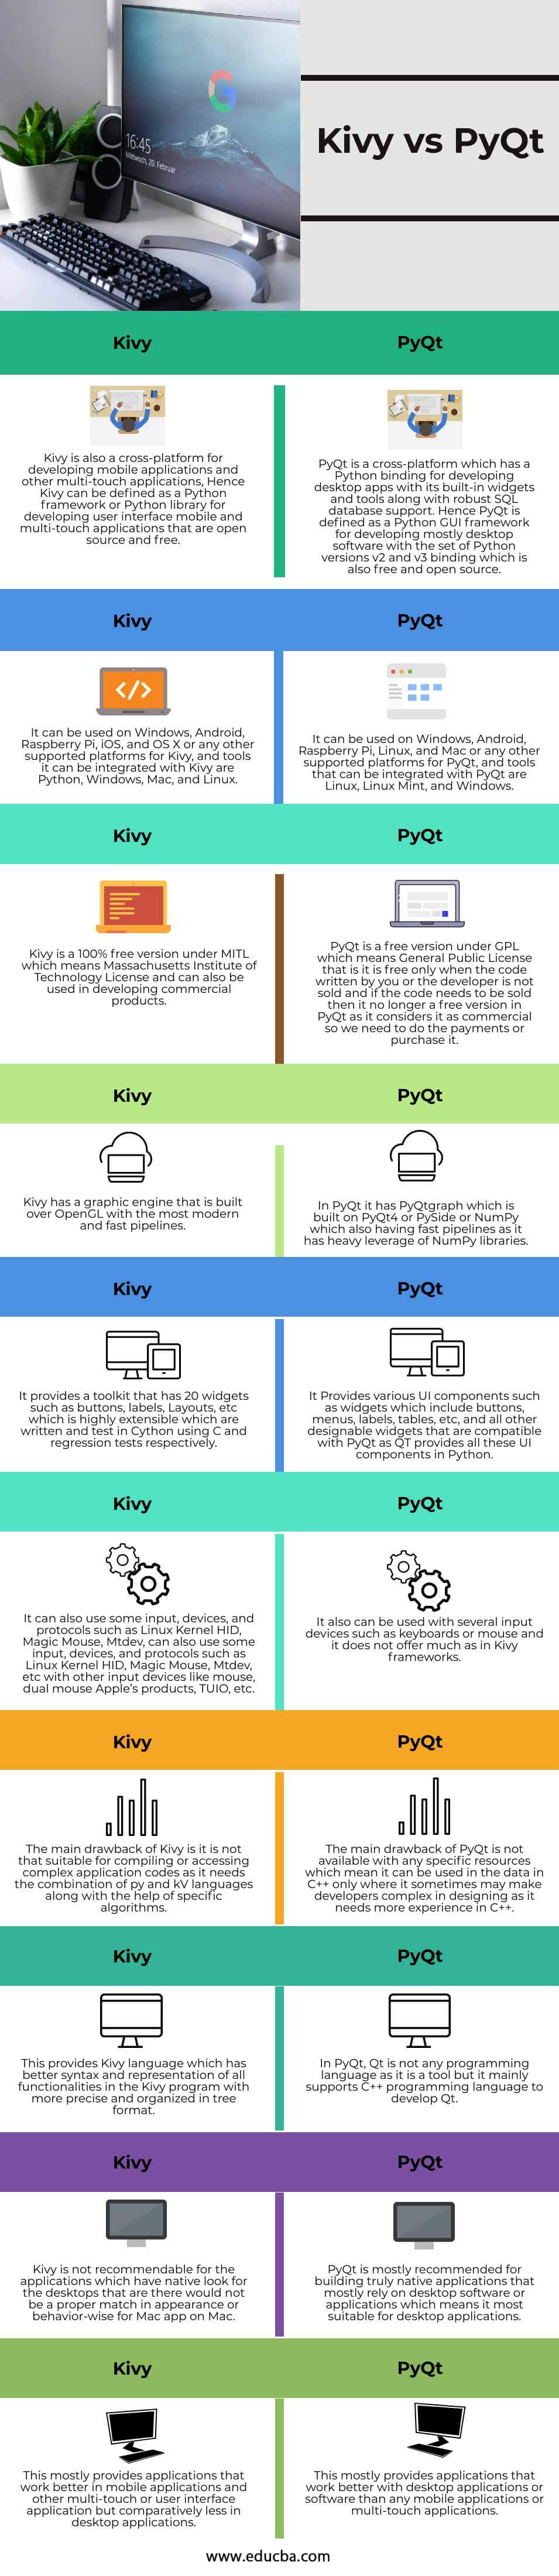 Kivy-vs-PyQt-info